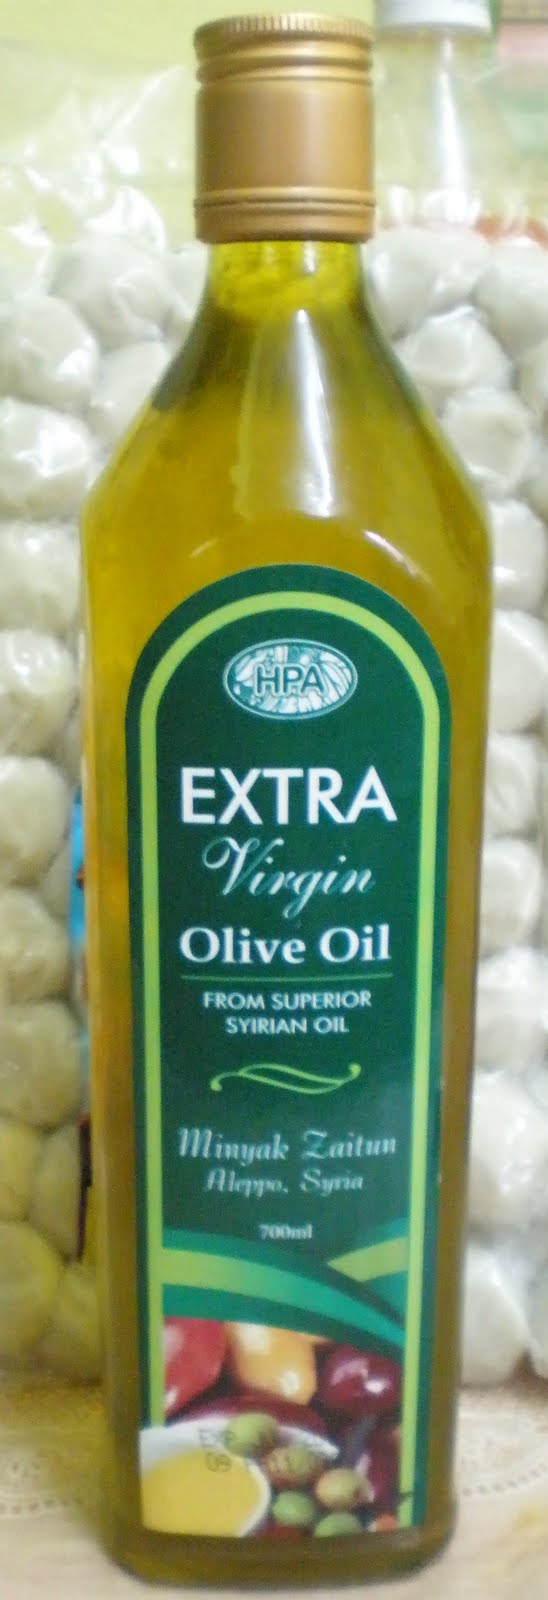 myHPAlibrary: Minyak Zaitun (Extra Virgin Olive Oil)